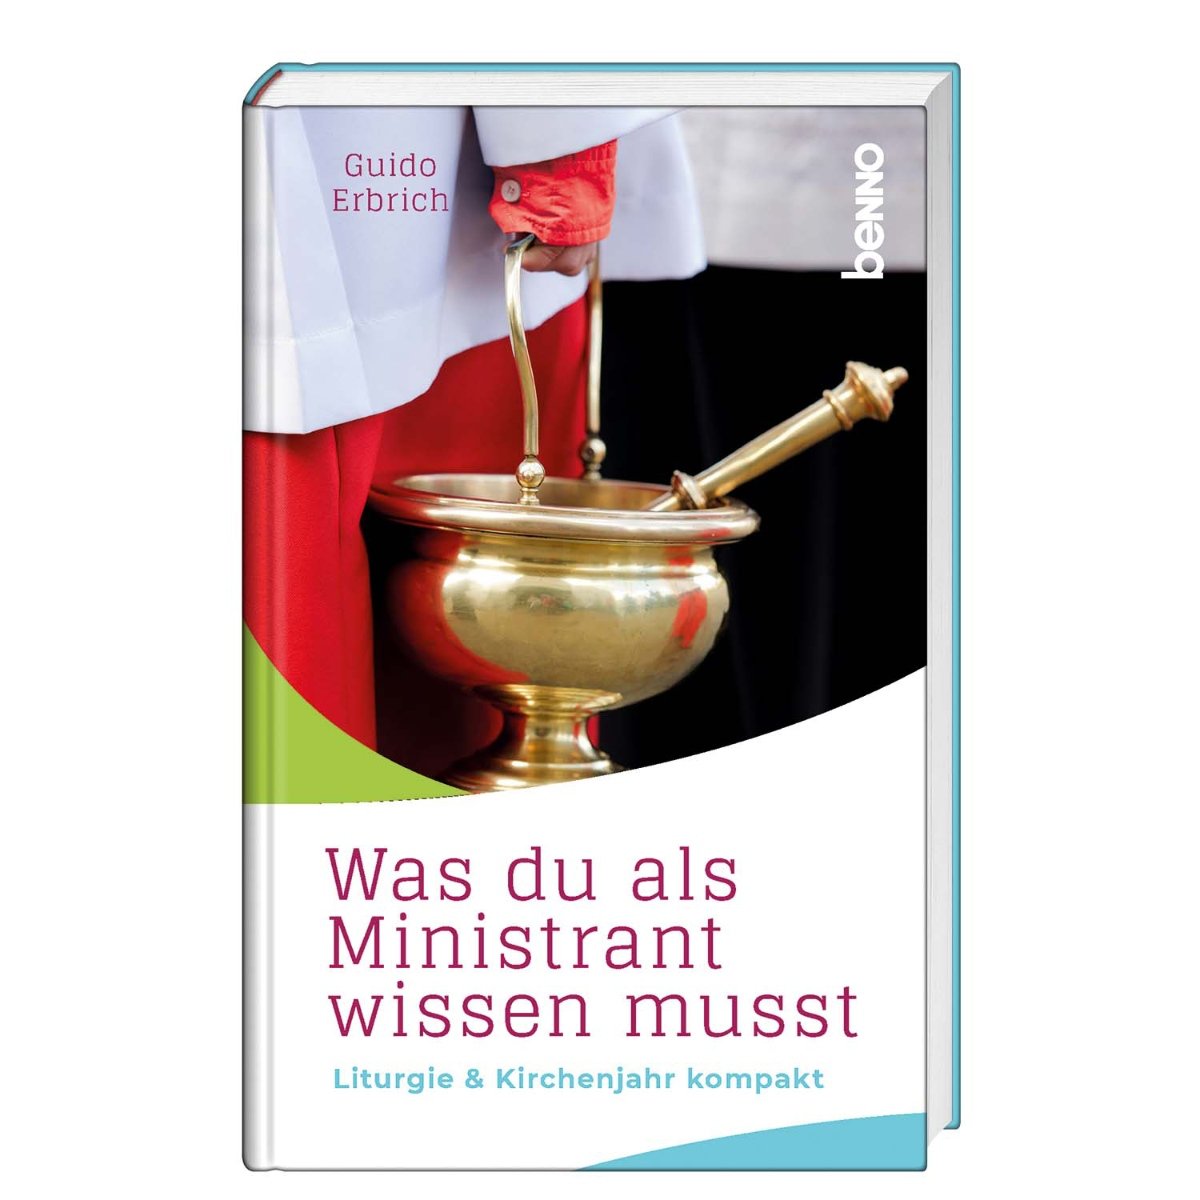 Was du als Ministrant wissen musst (c) Vivat / St. Benno Verlag